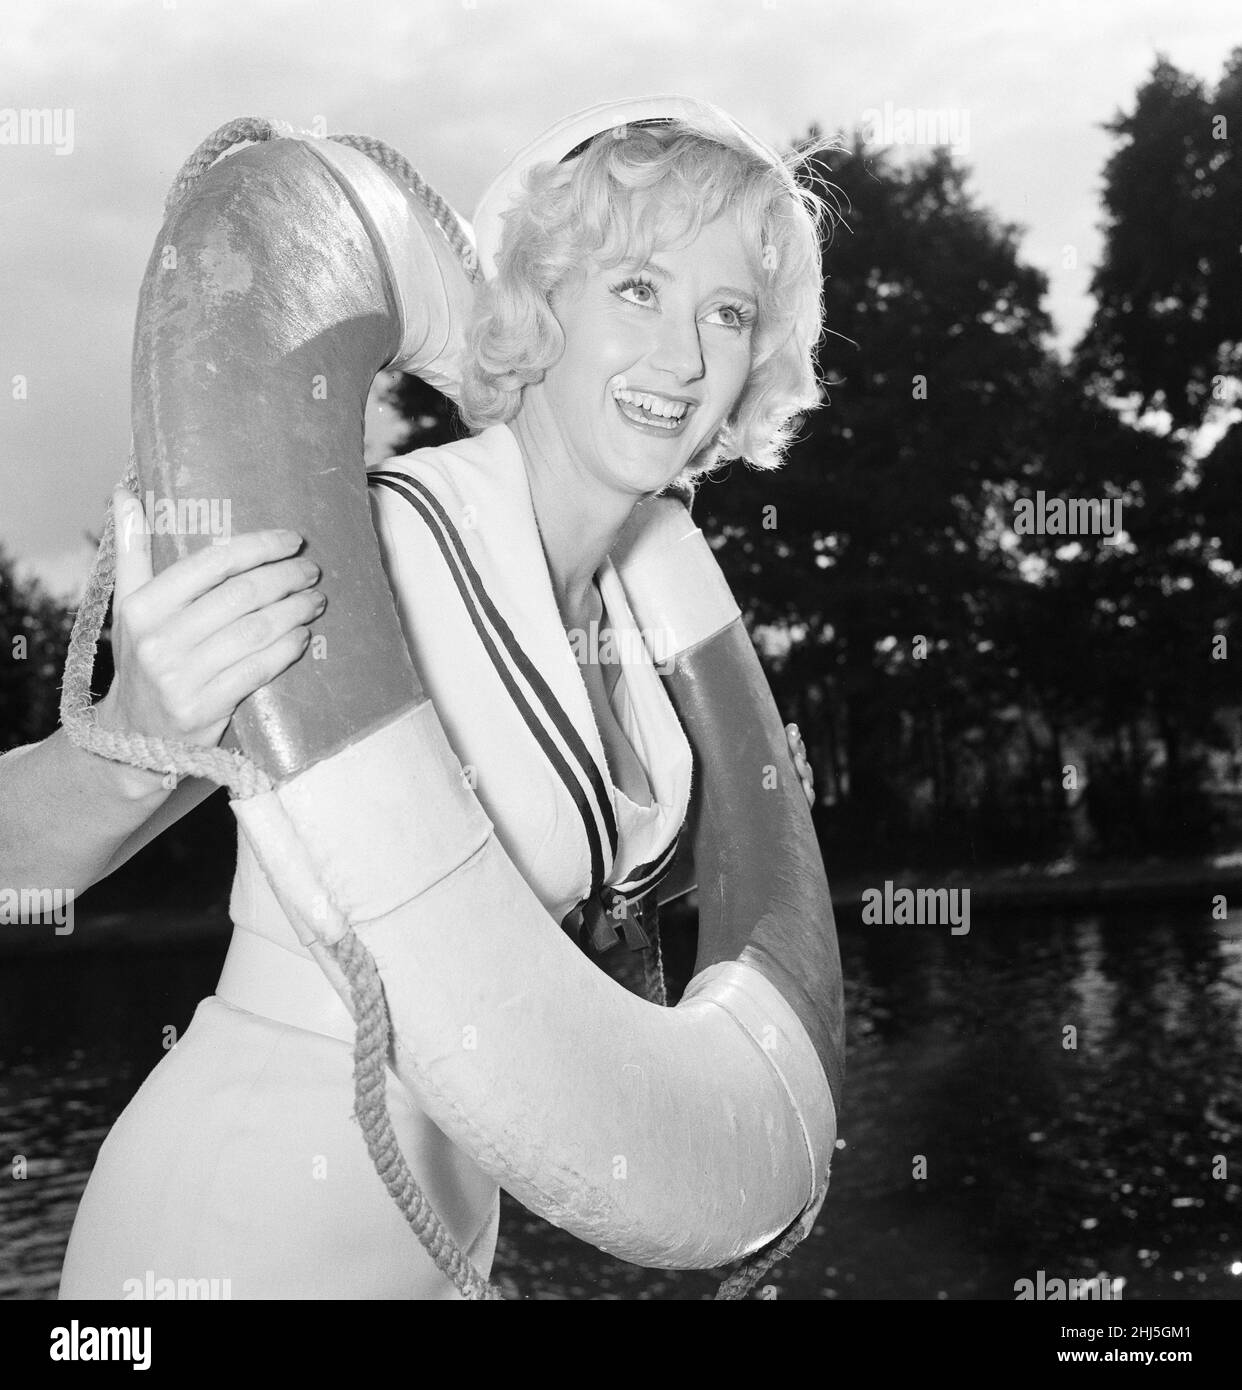 Liz Fraser, englische Schauspielerin, fotografiert vor Ort auf Tagg's Island, im Londoner Stadtteil Richmond upon Thames, wo sie derzeit Double Bunk dreht, Montag, 26th. September 1960. Stockfoto